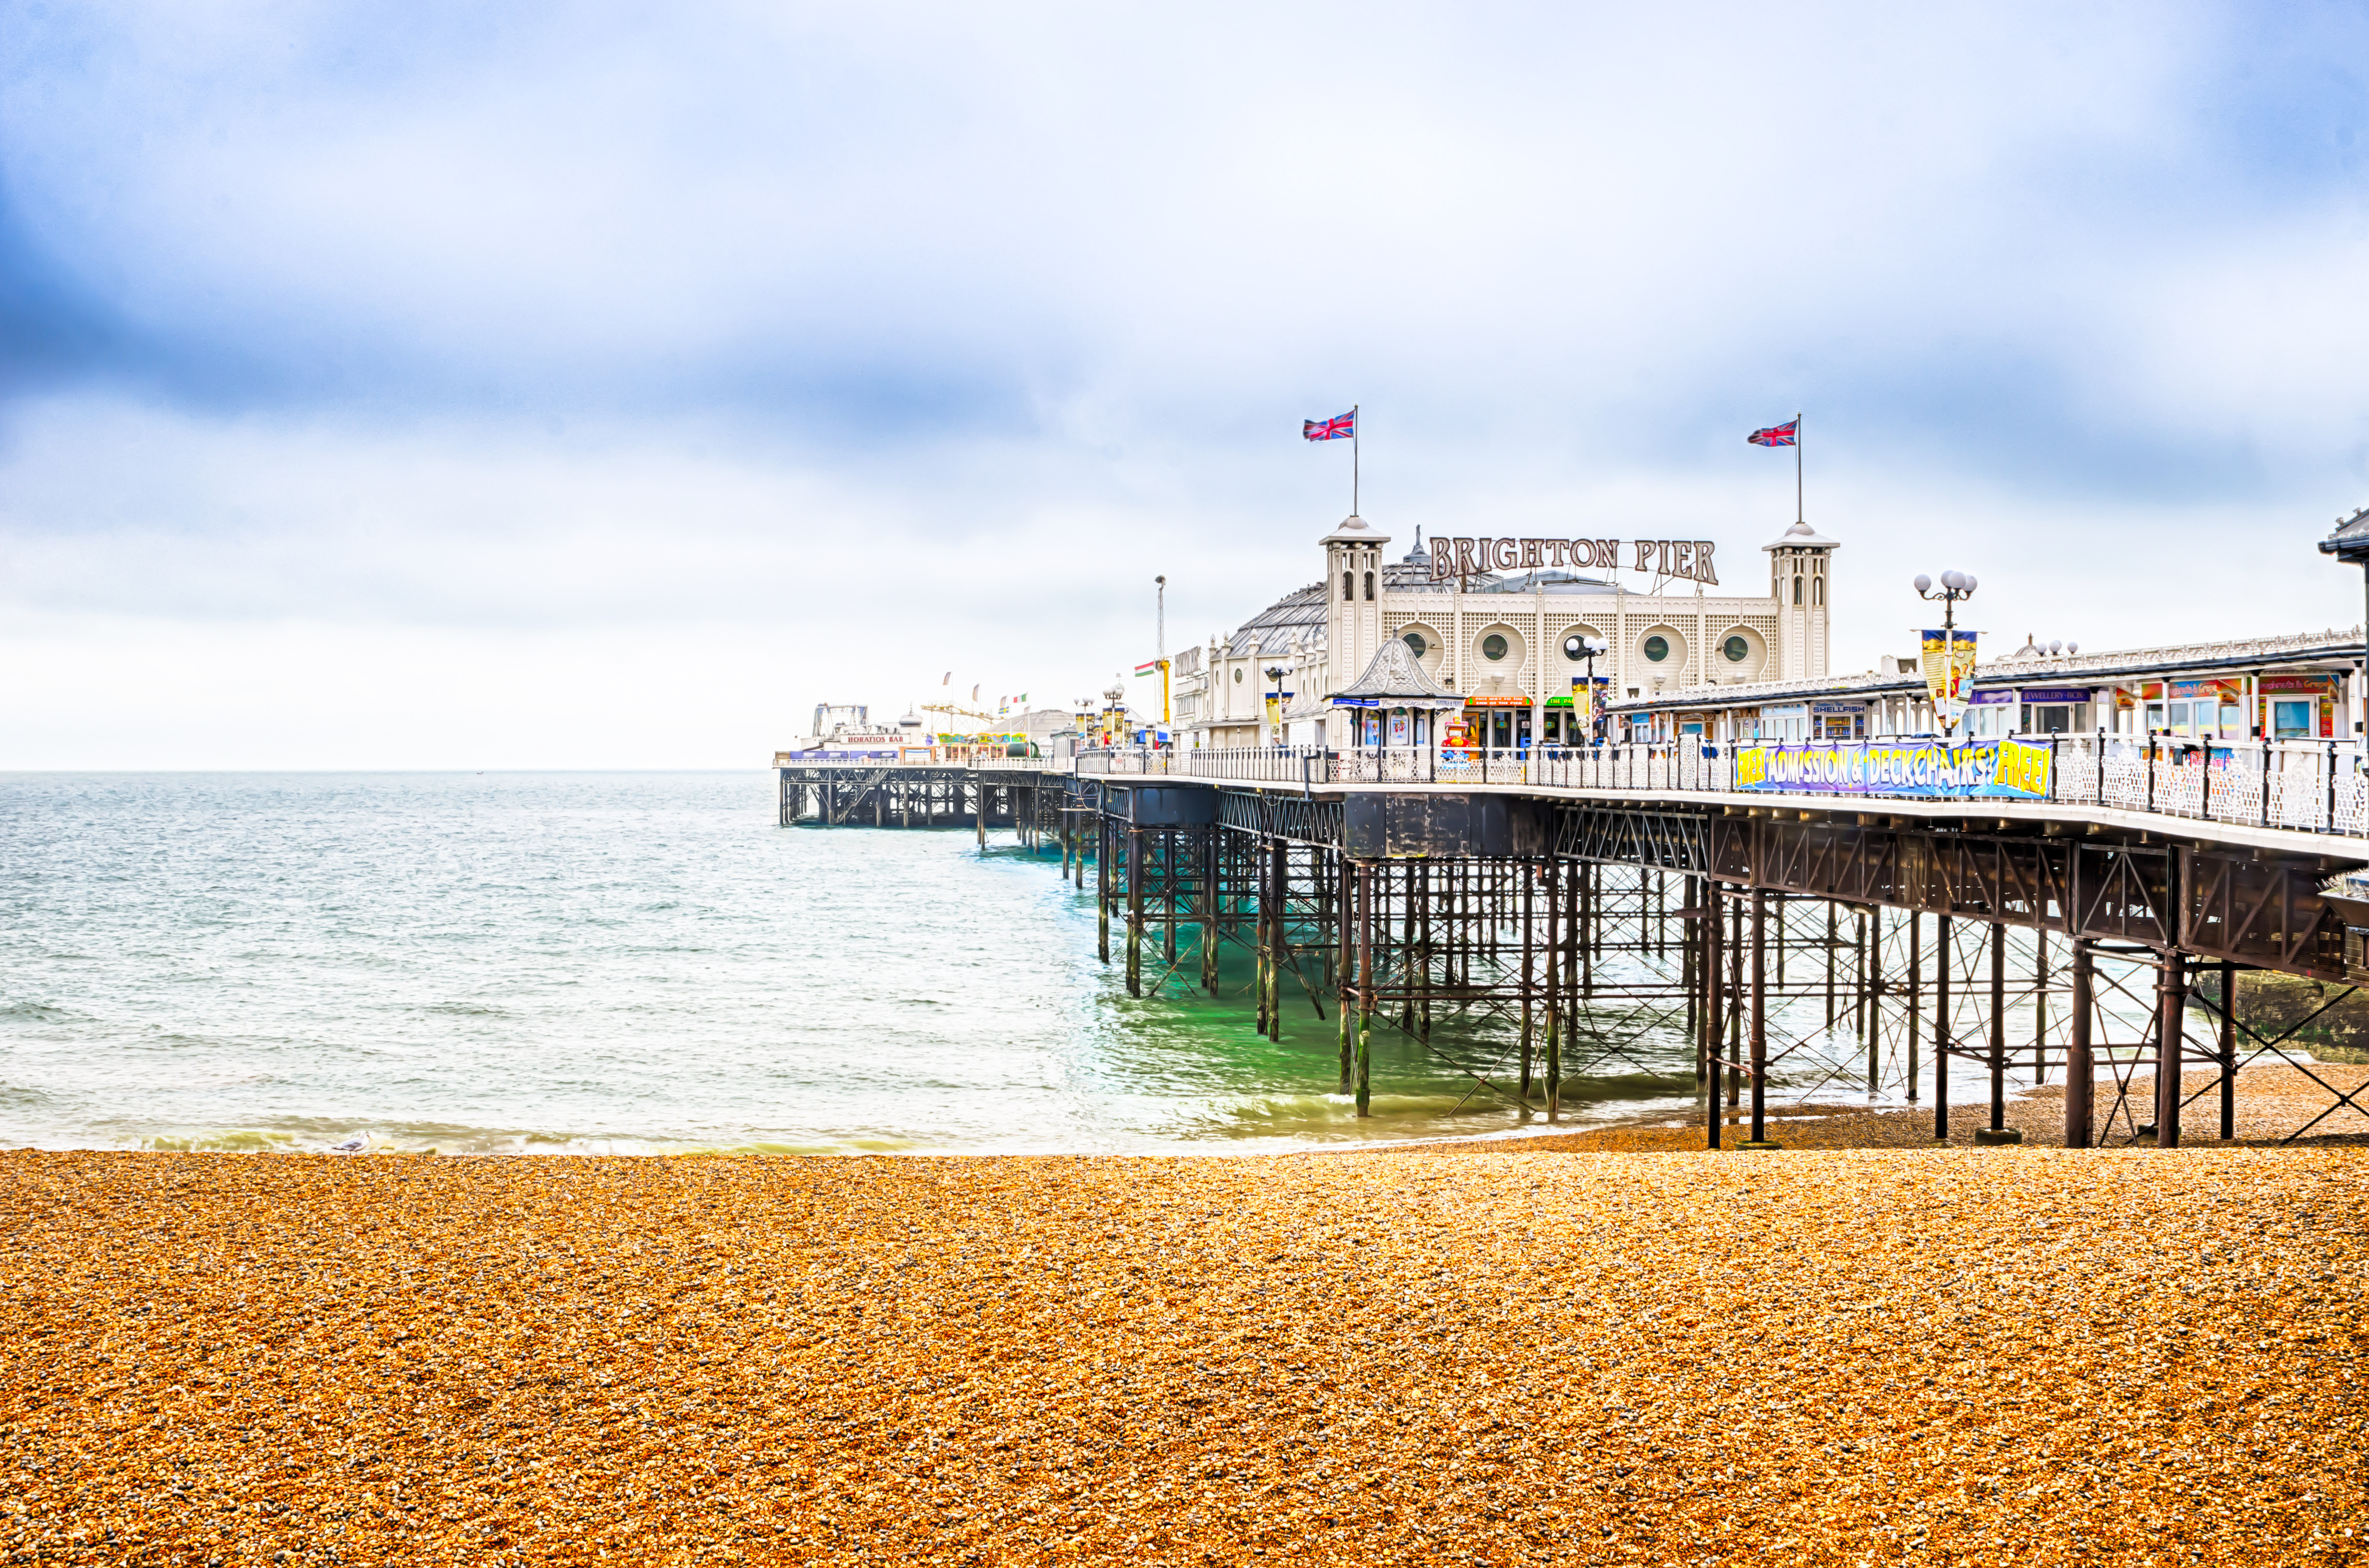 Brighton pier UK England